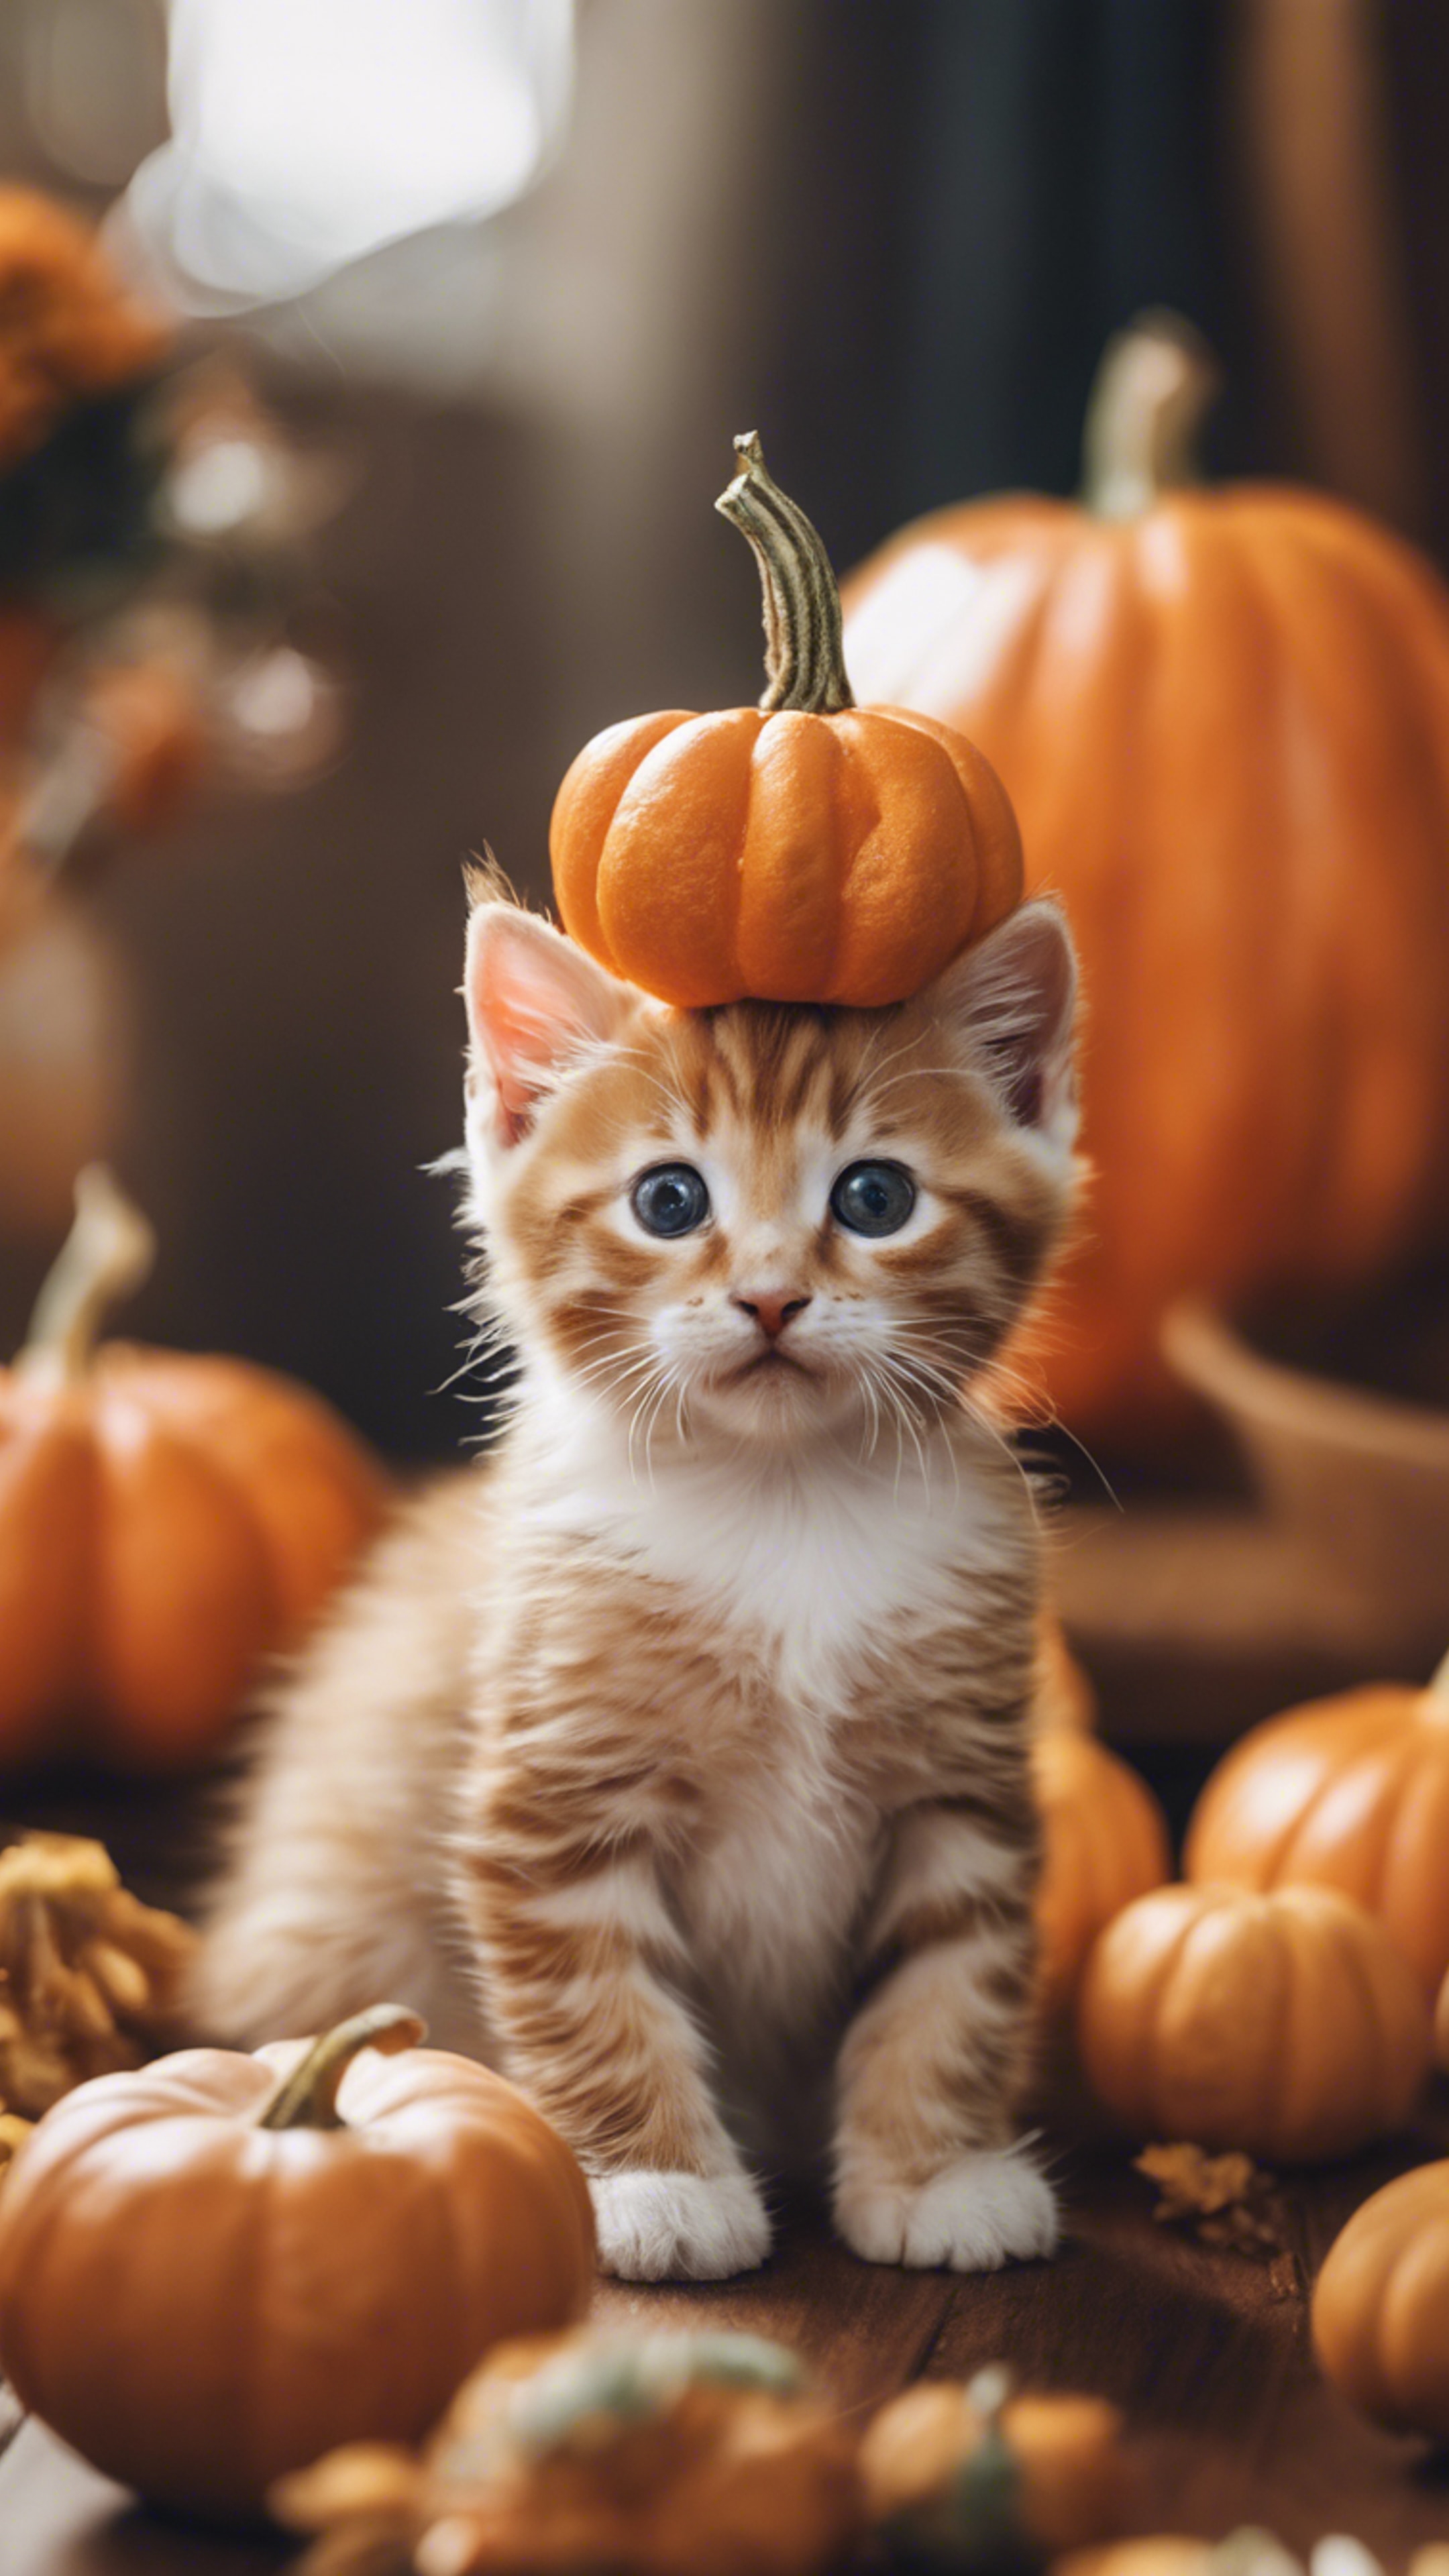 An orange tabby kitten dressed up as a tiny pumpkin for Halloween festivities.壁紙[a5205dadd28d41bcbdef]